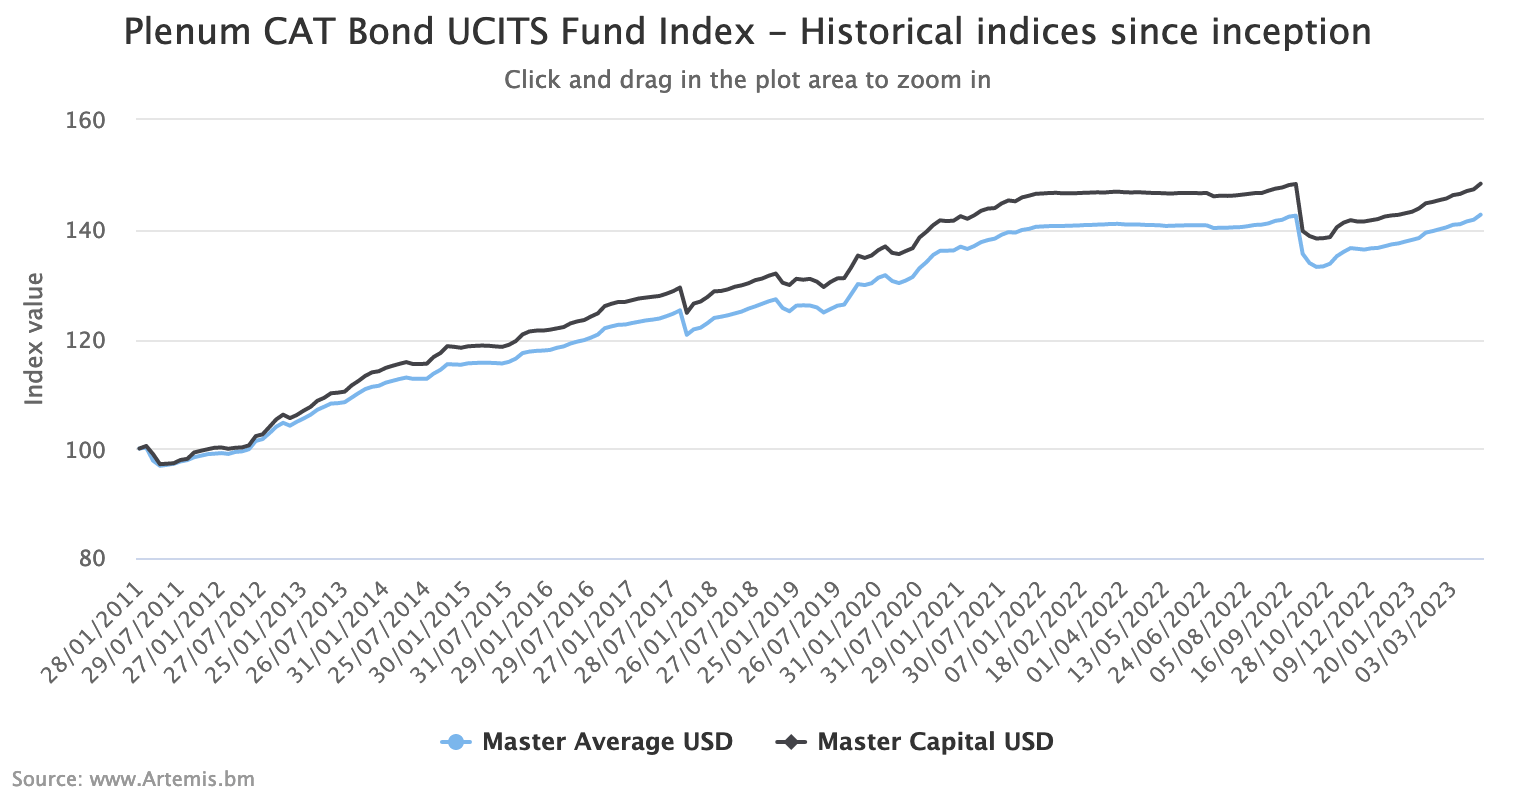 catastrophe-bond-fund-index-ucits-plenum-historical